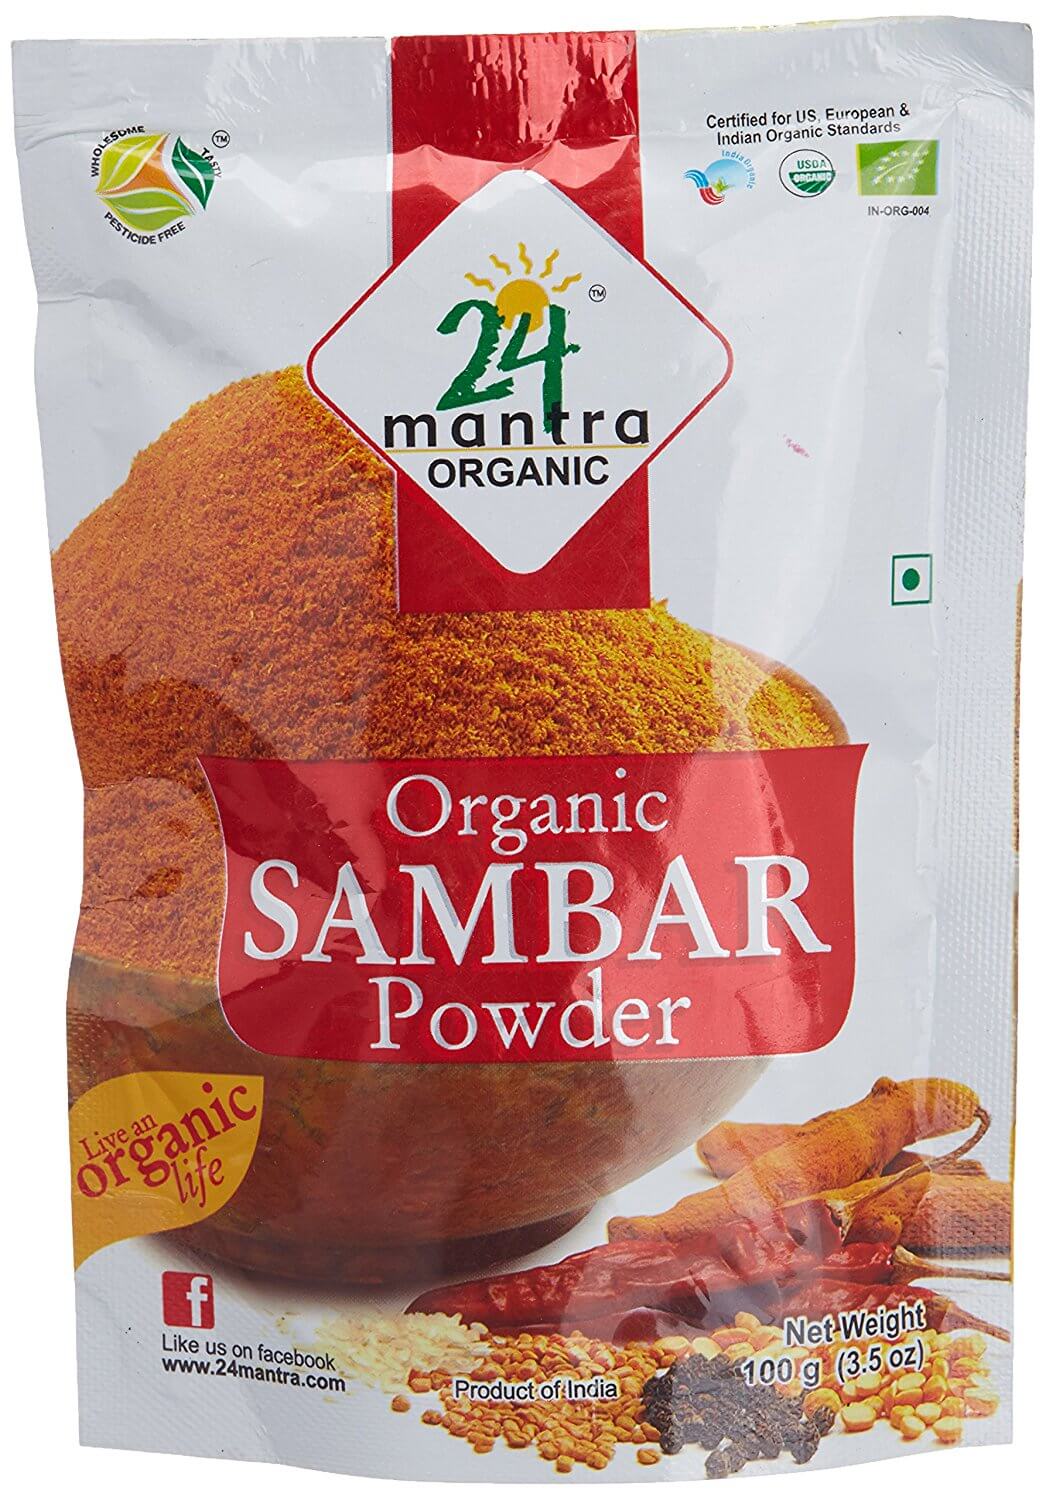 24 Mantra Organic Sambar Powder 100g VizagShop.com